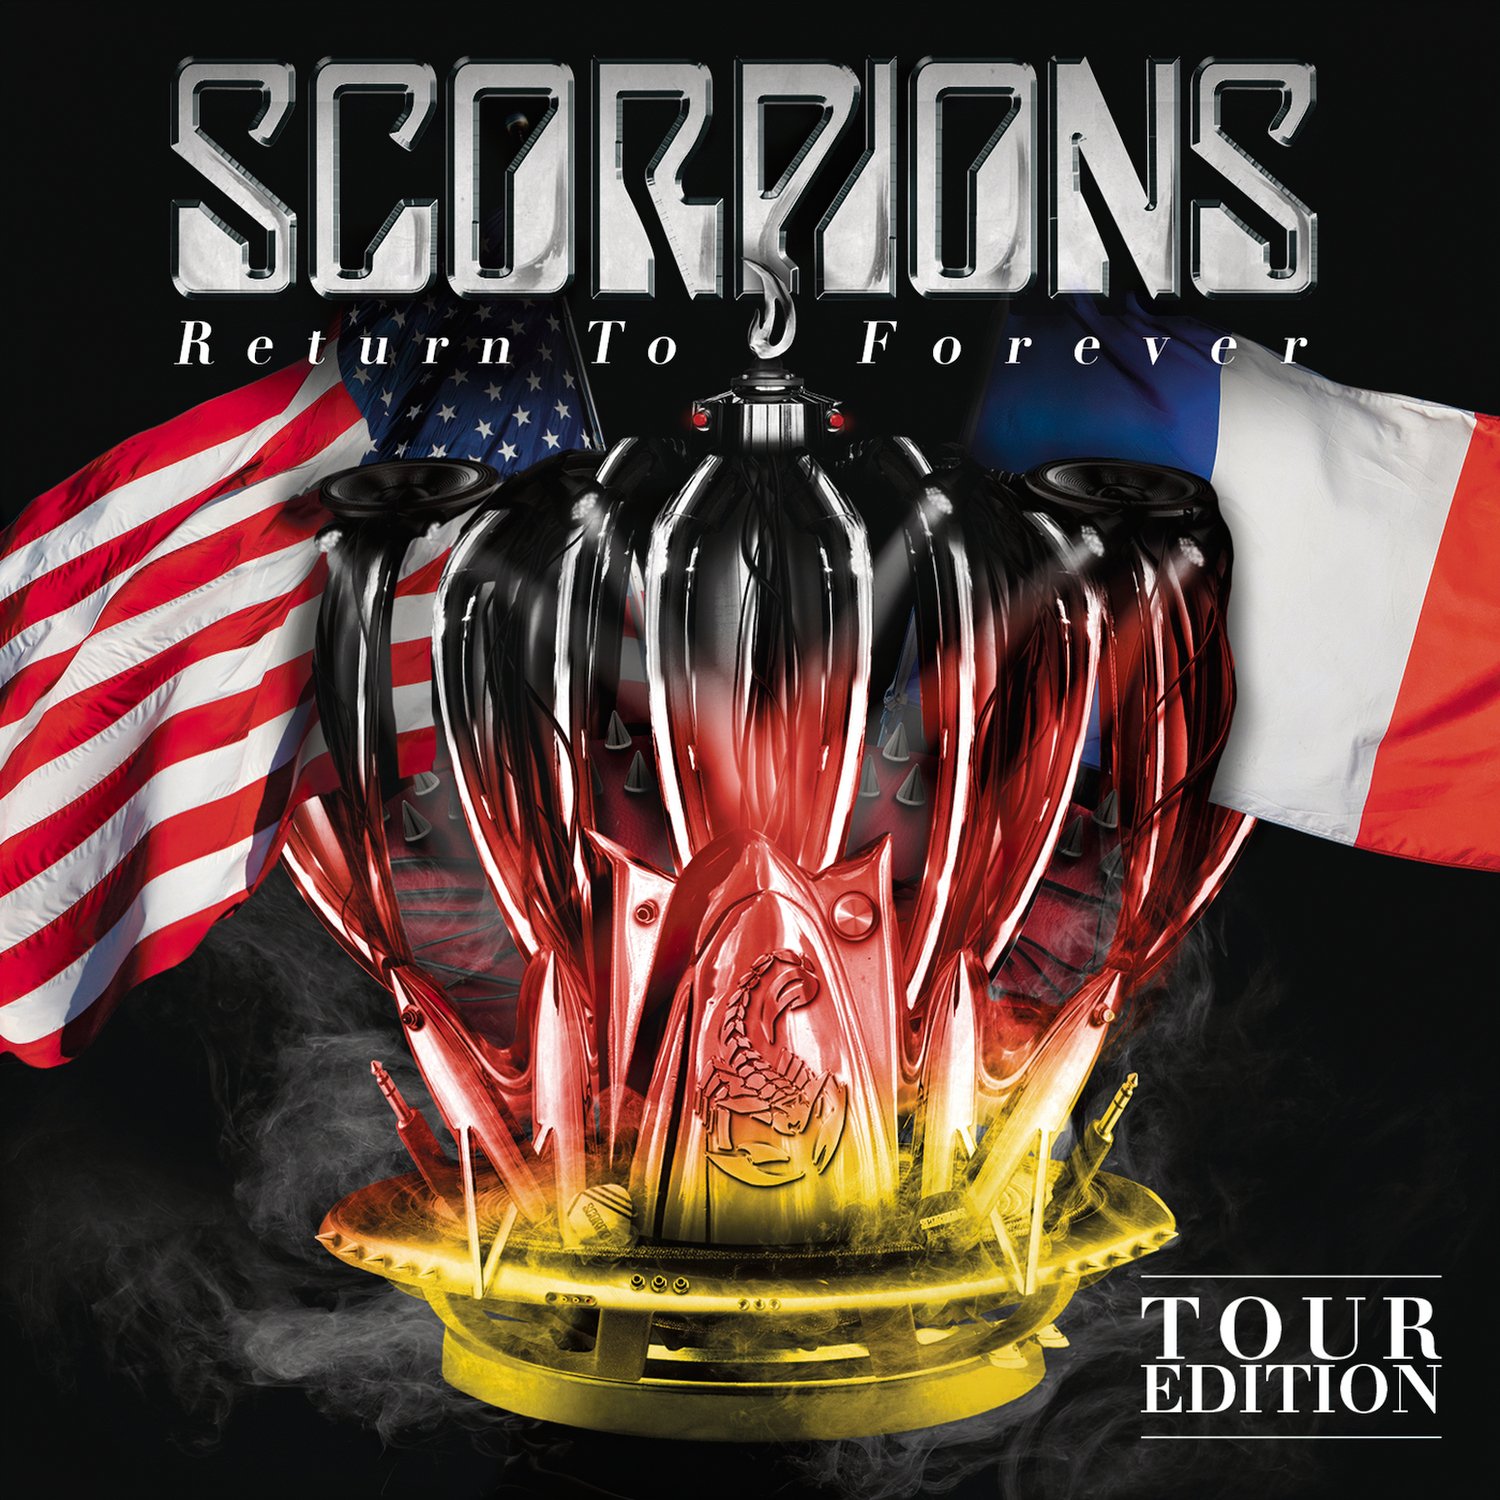 Scorpions-Return to forever.jpg